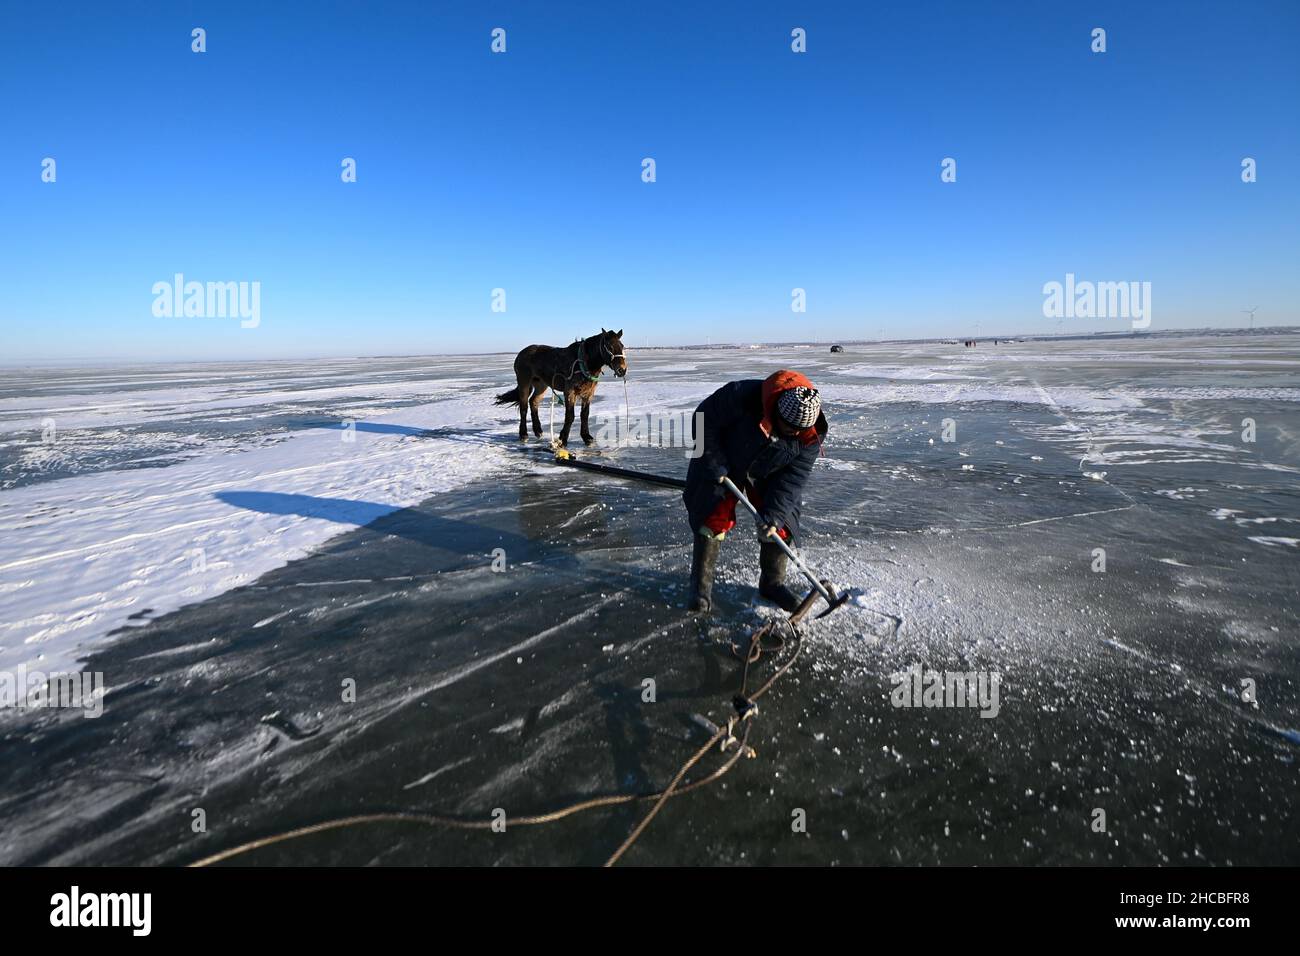 Songyuan, Chinas Provinz Jilin. 26th Dez 2021. Ein Fischer bereitet sich auf die Fischernte am Chagan-See in Songyuan, nordöstlich der Provinz Jilin, vor, 26. Dezember 2021. Jahrhundertelang haben Fischer und Frauen, die am See leben, die Tradition des Eisfischens am Leben erhalten - man bohrt Löcher durch dickes Eis und legt Netze unter, um Fische zu fangen. Die Technik wurde als eine Form des immateriellen Kulturerbes auf nationaler Ebene aufgeführt. Quelle: Yan Linyun/Xinhua/Alamy Live News Stockfoto